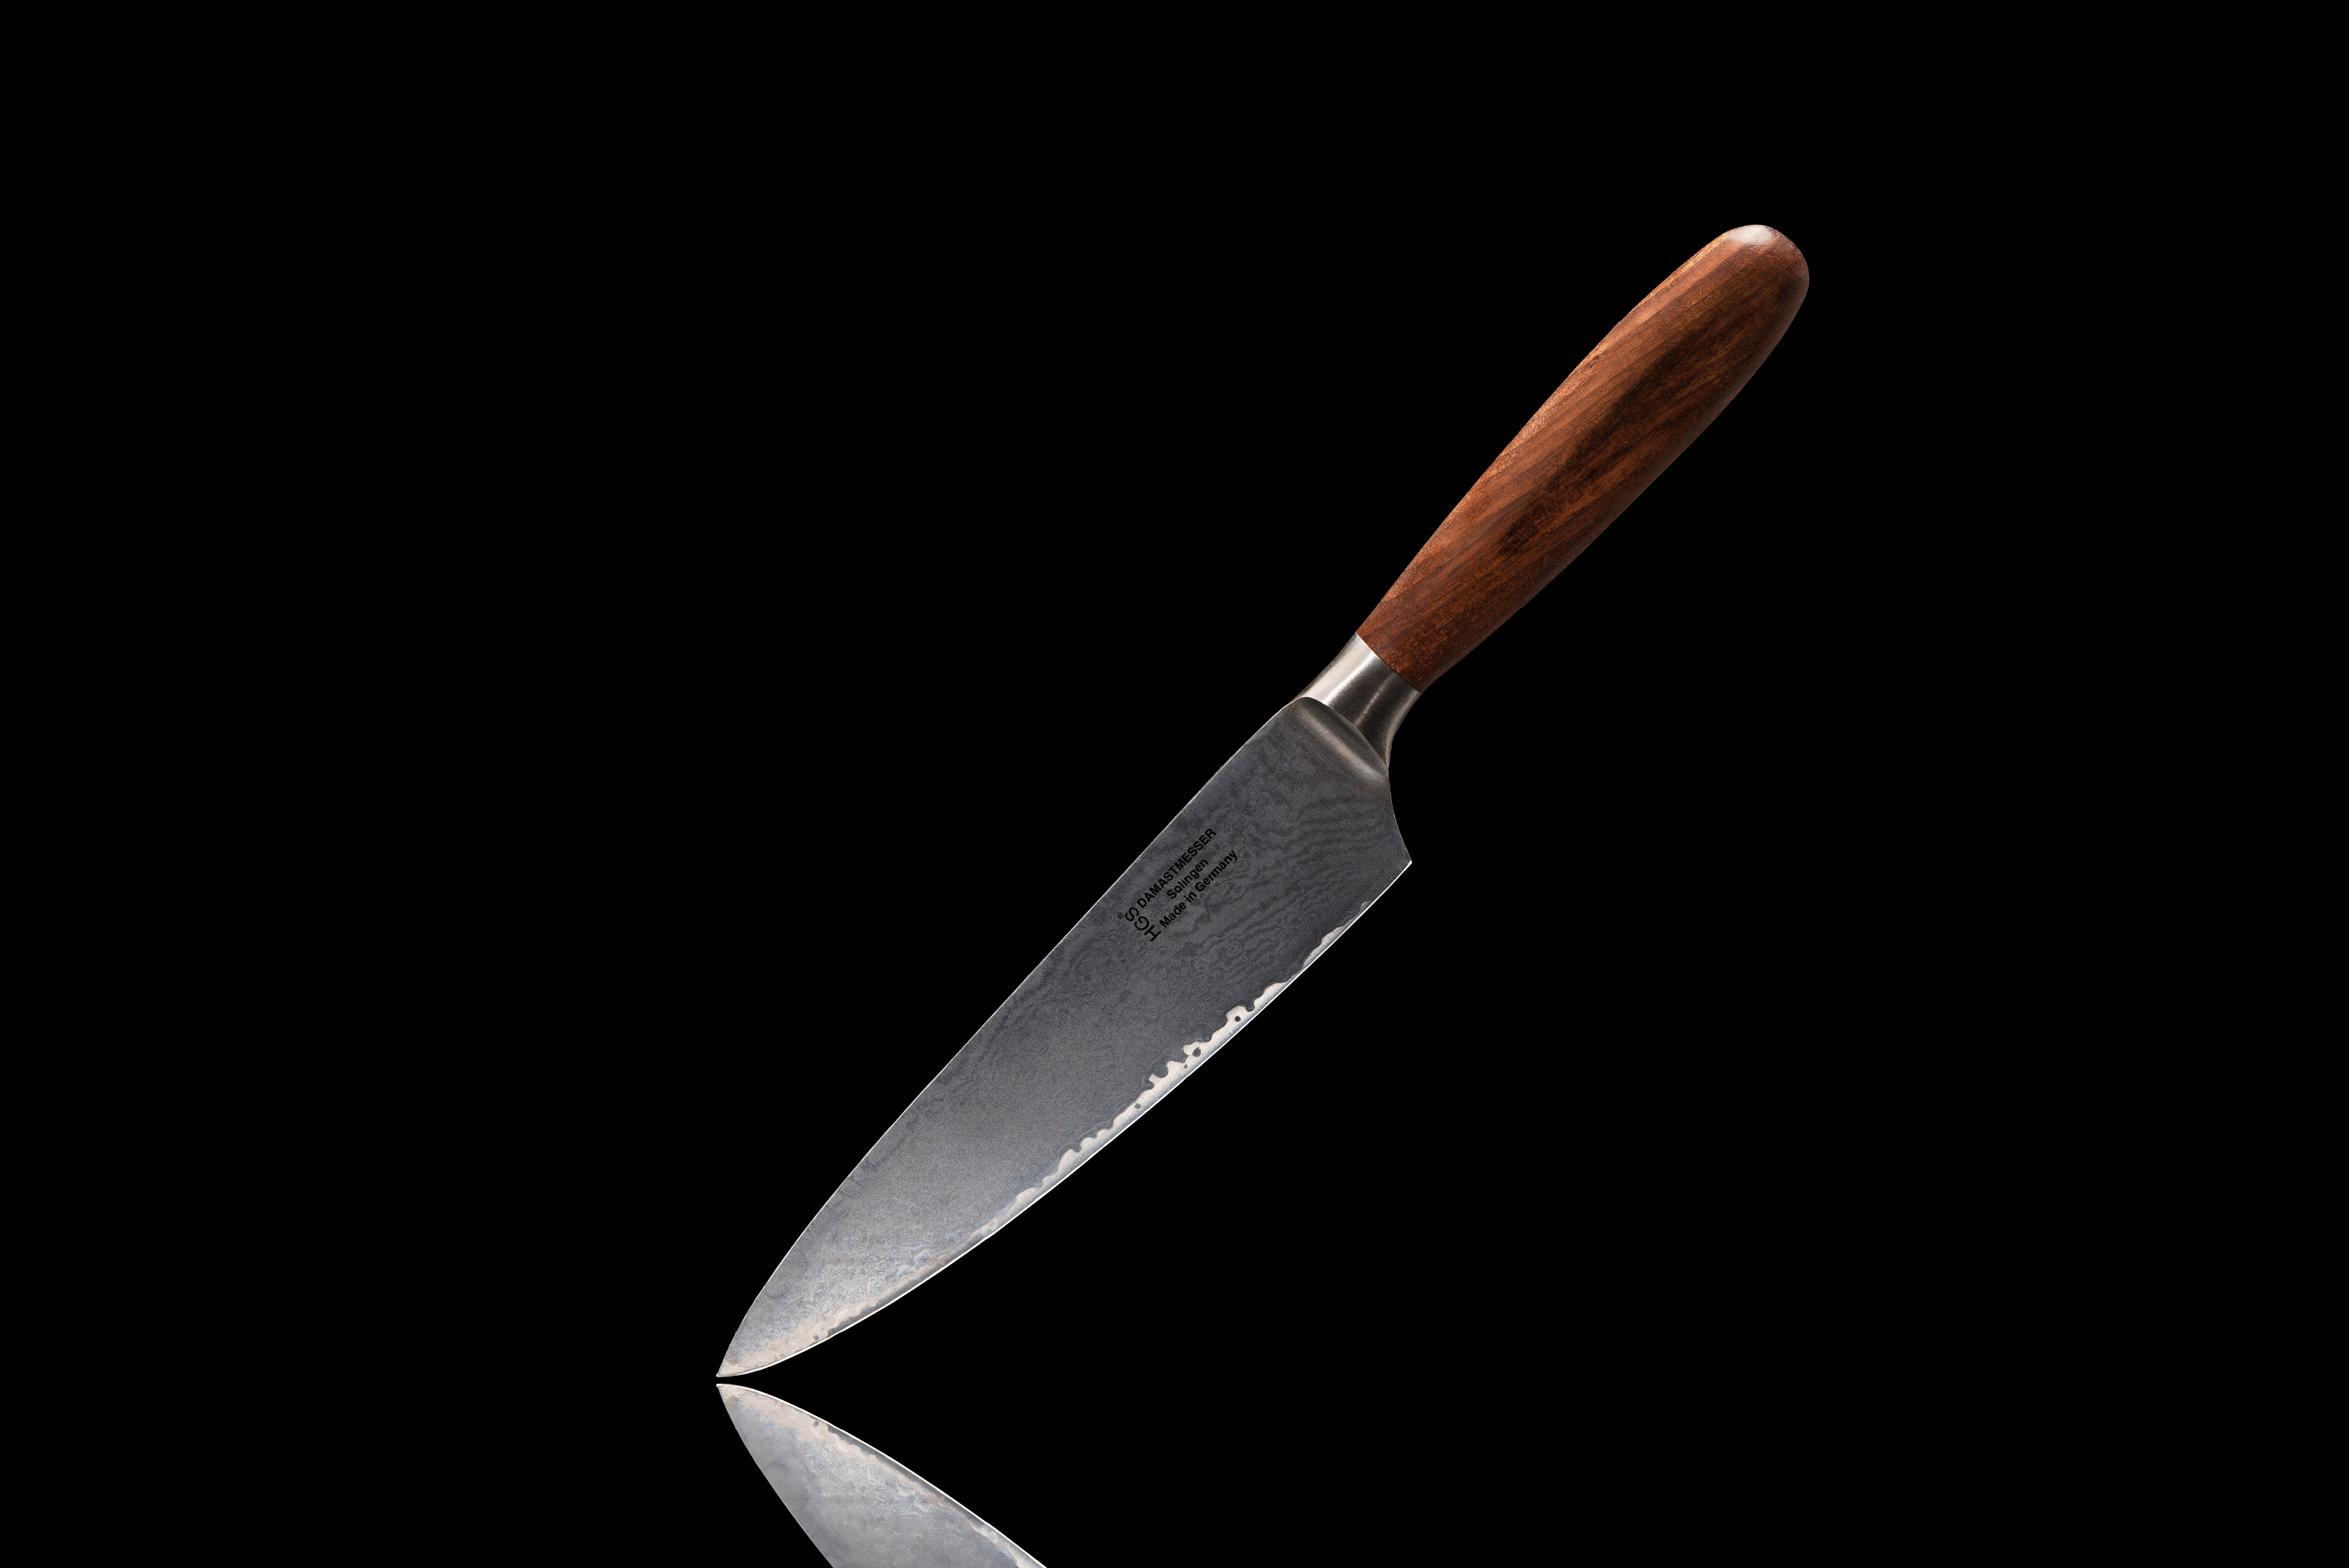 Produktfotografie mit Messer